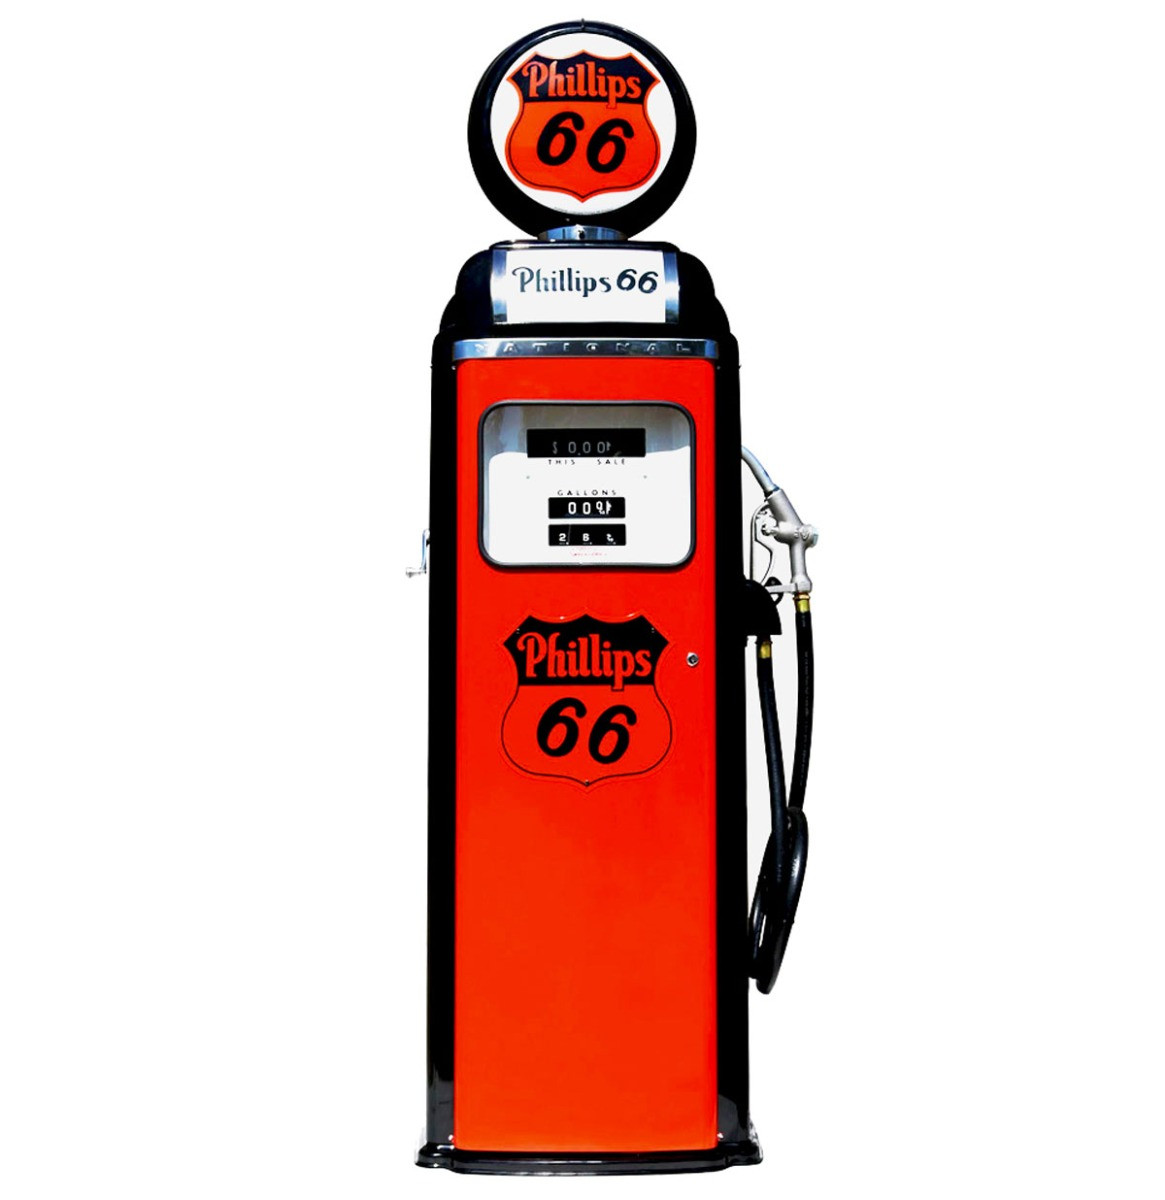 Phillips 66 National 360 Computer Face Benzinepomp - Oranje & Zwart - Reproductie